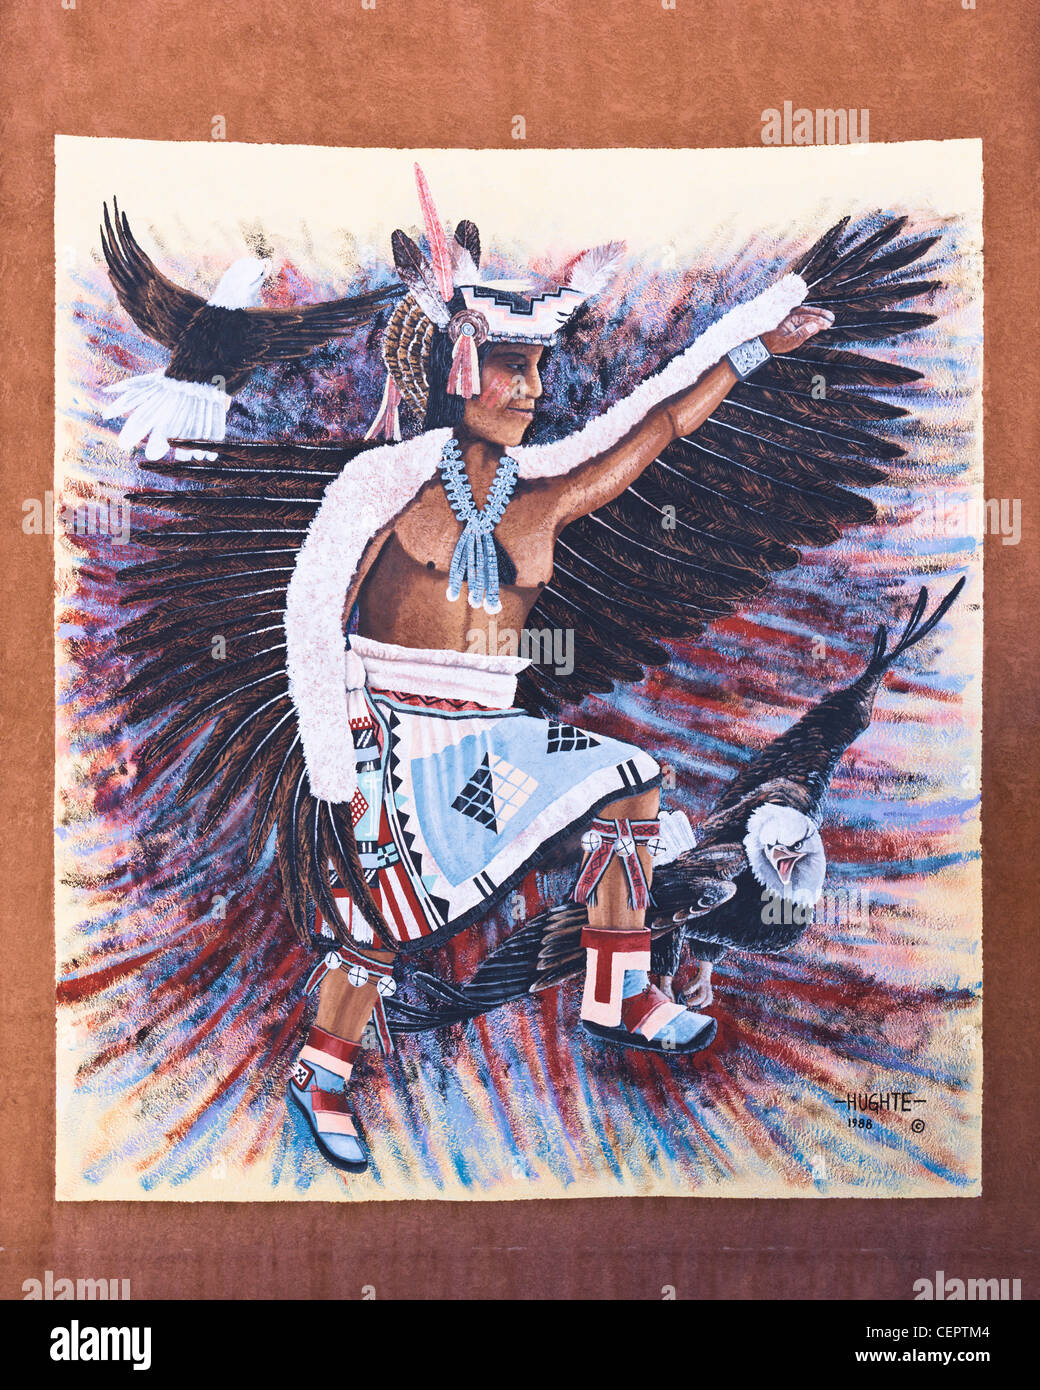 Native dancer by Hughte, Albuquerque Stock Photo